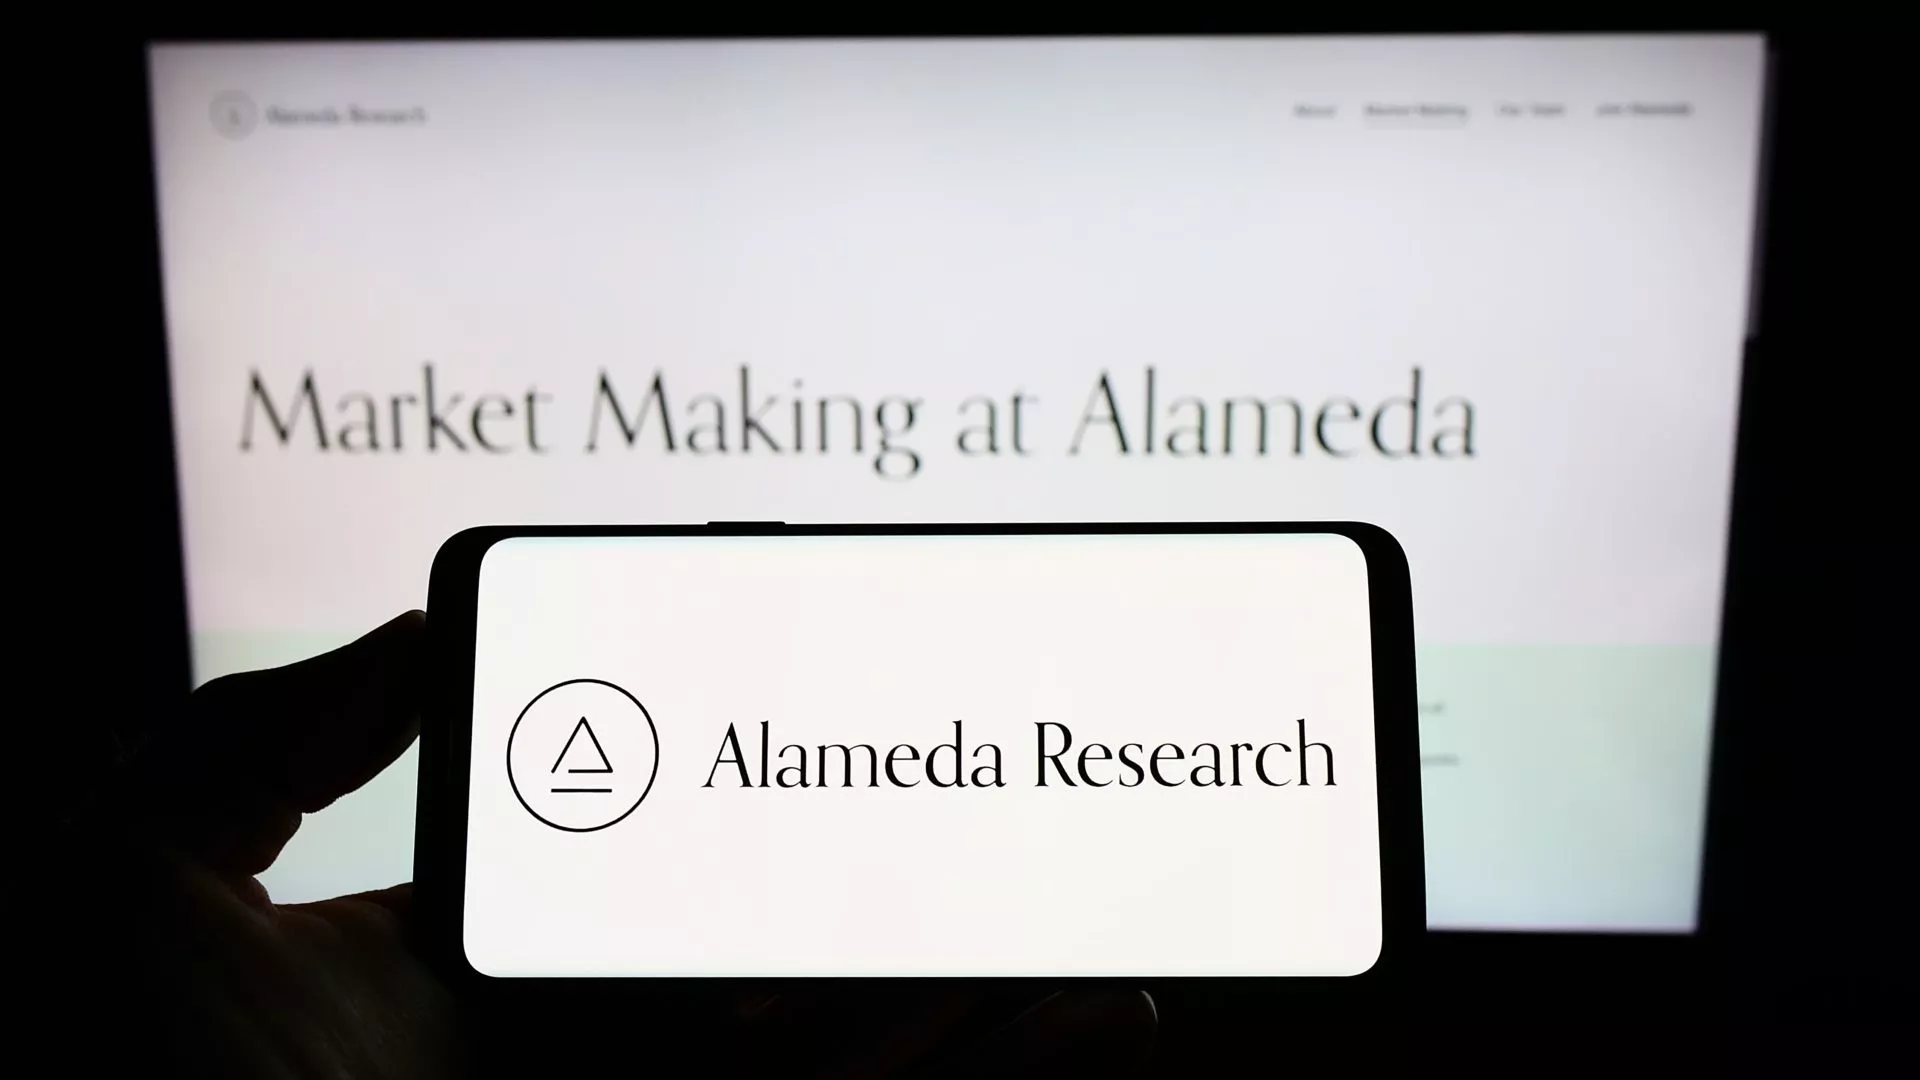 Financial Times geeft details vrij over vreemde investeringen Alameda Research